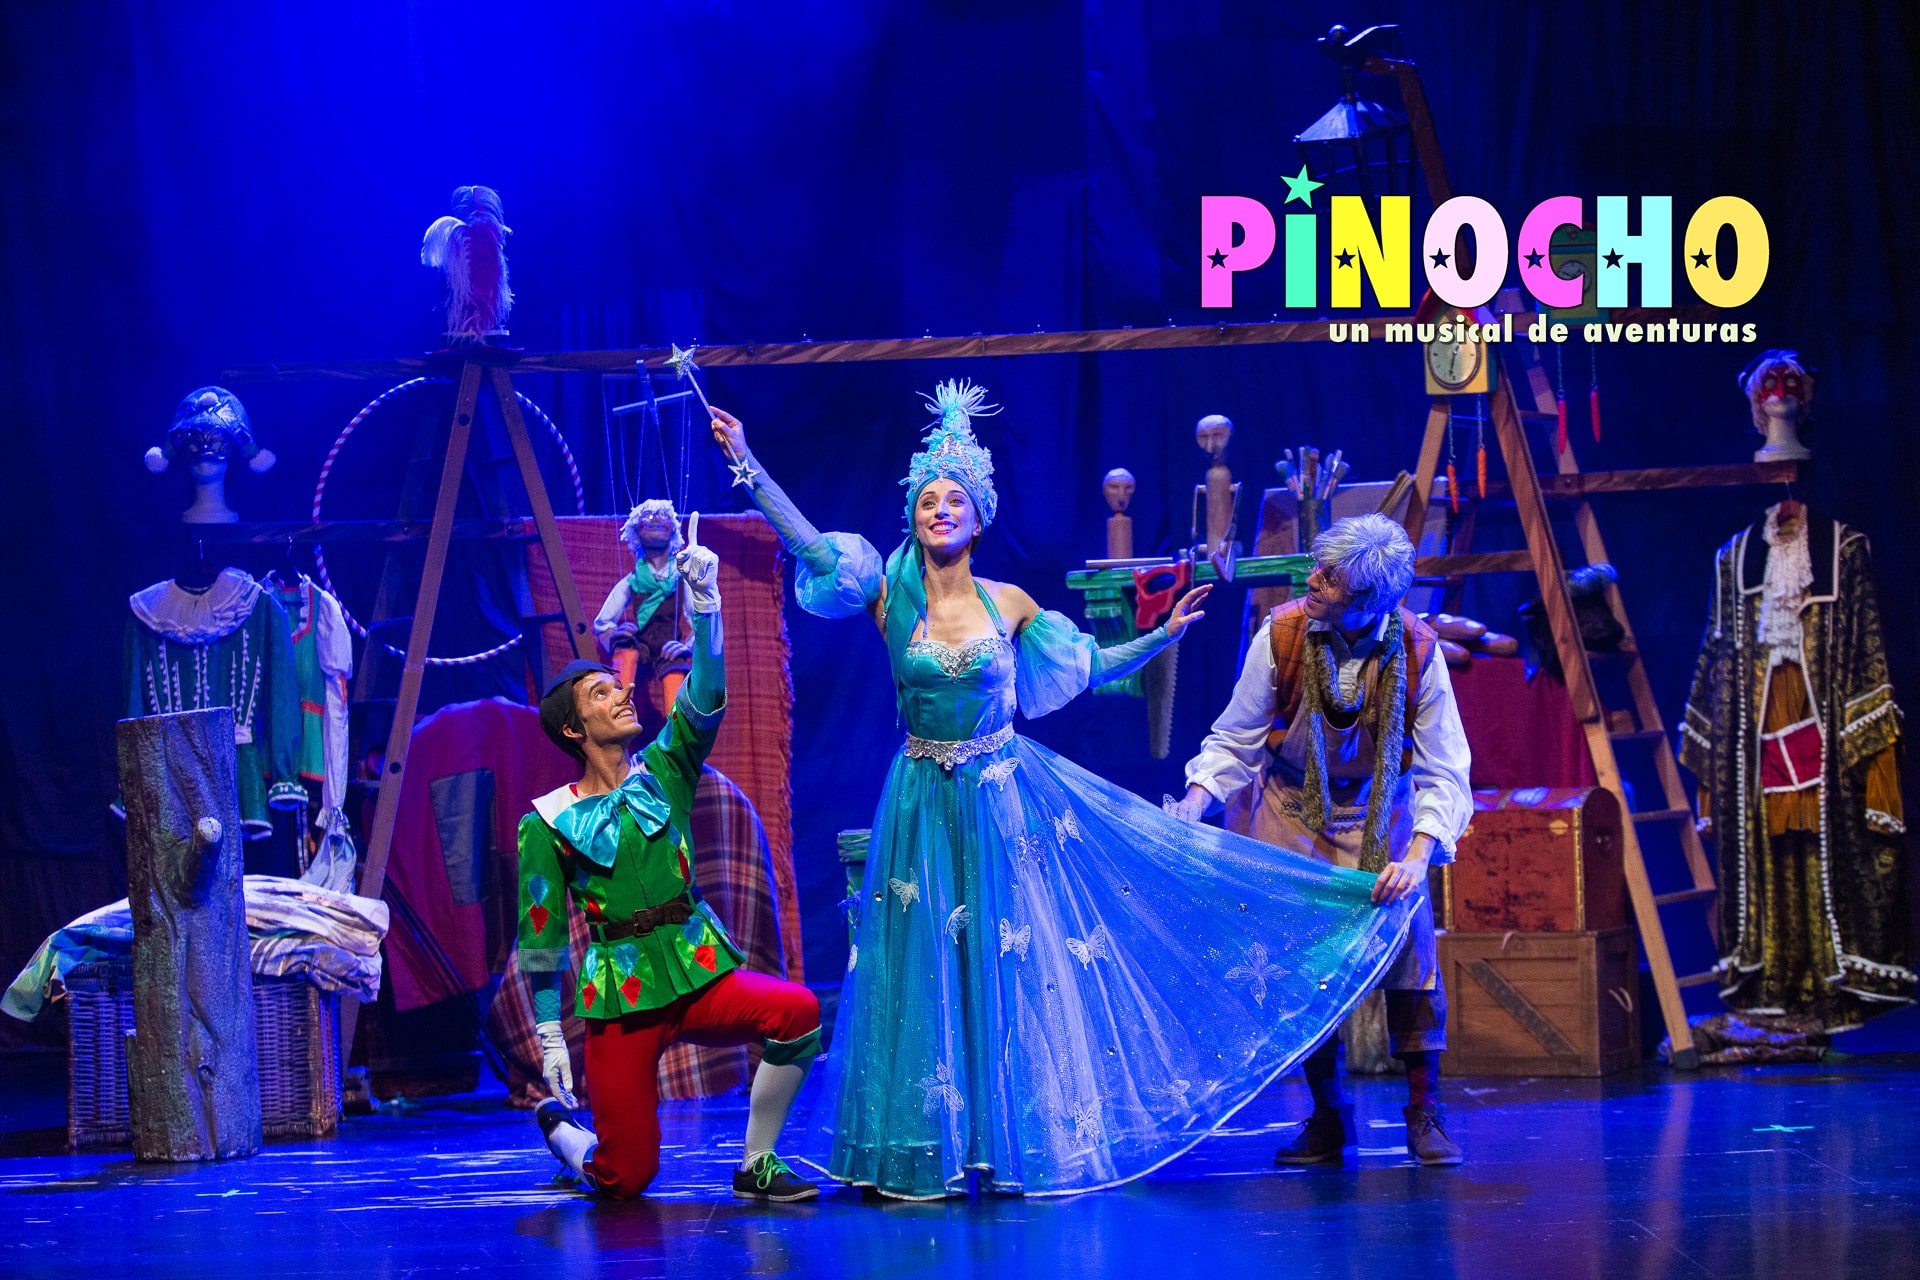 Pinocho un musical de aventuras